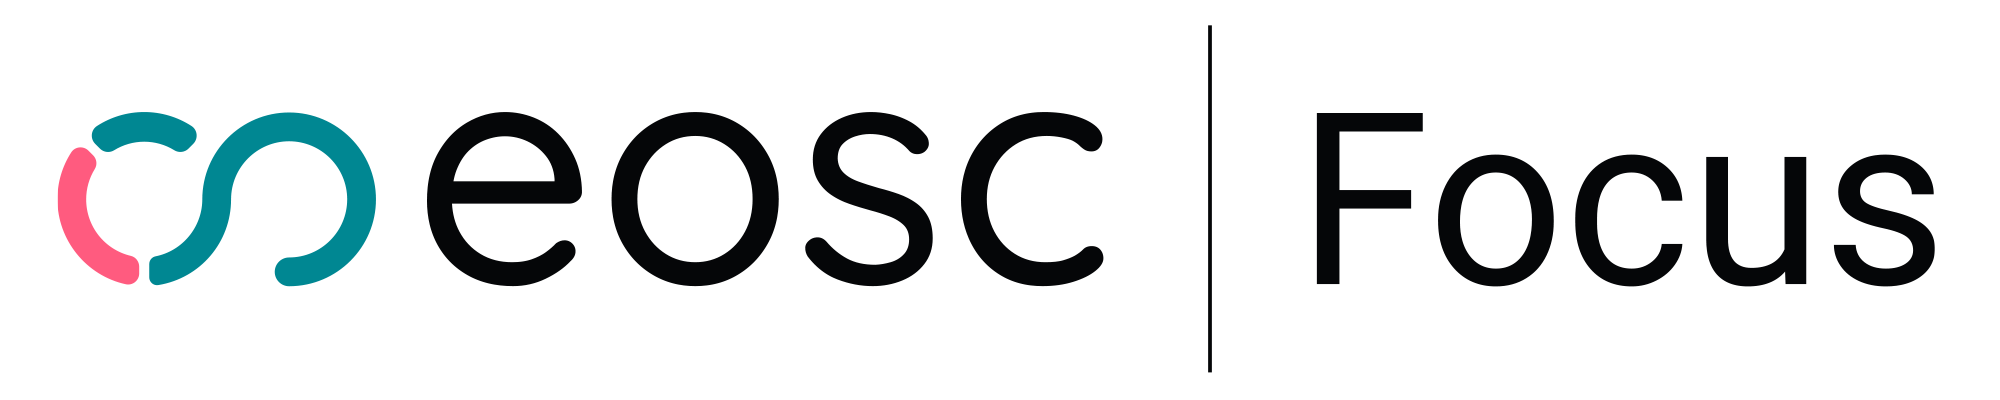 EOSC Focus_logo